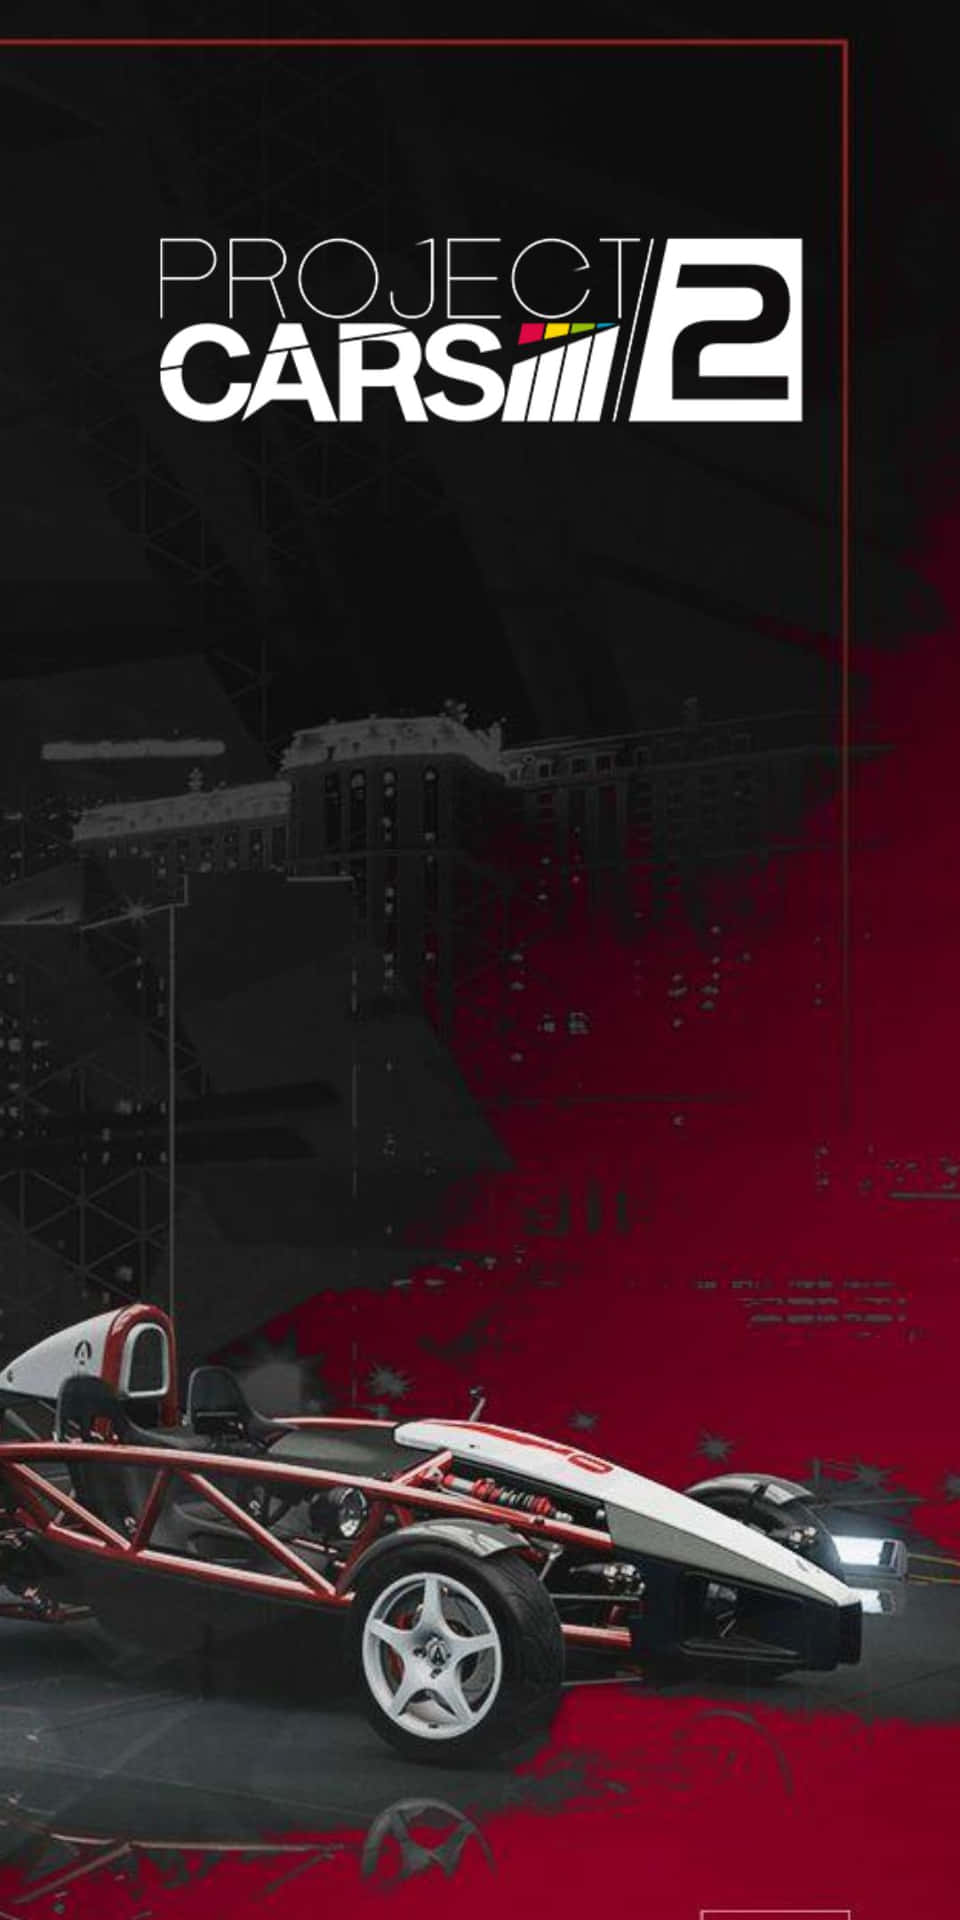 Modellonero E Rosso Pixel 3 Sfondo Progetto Cars 2.